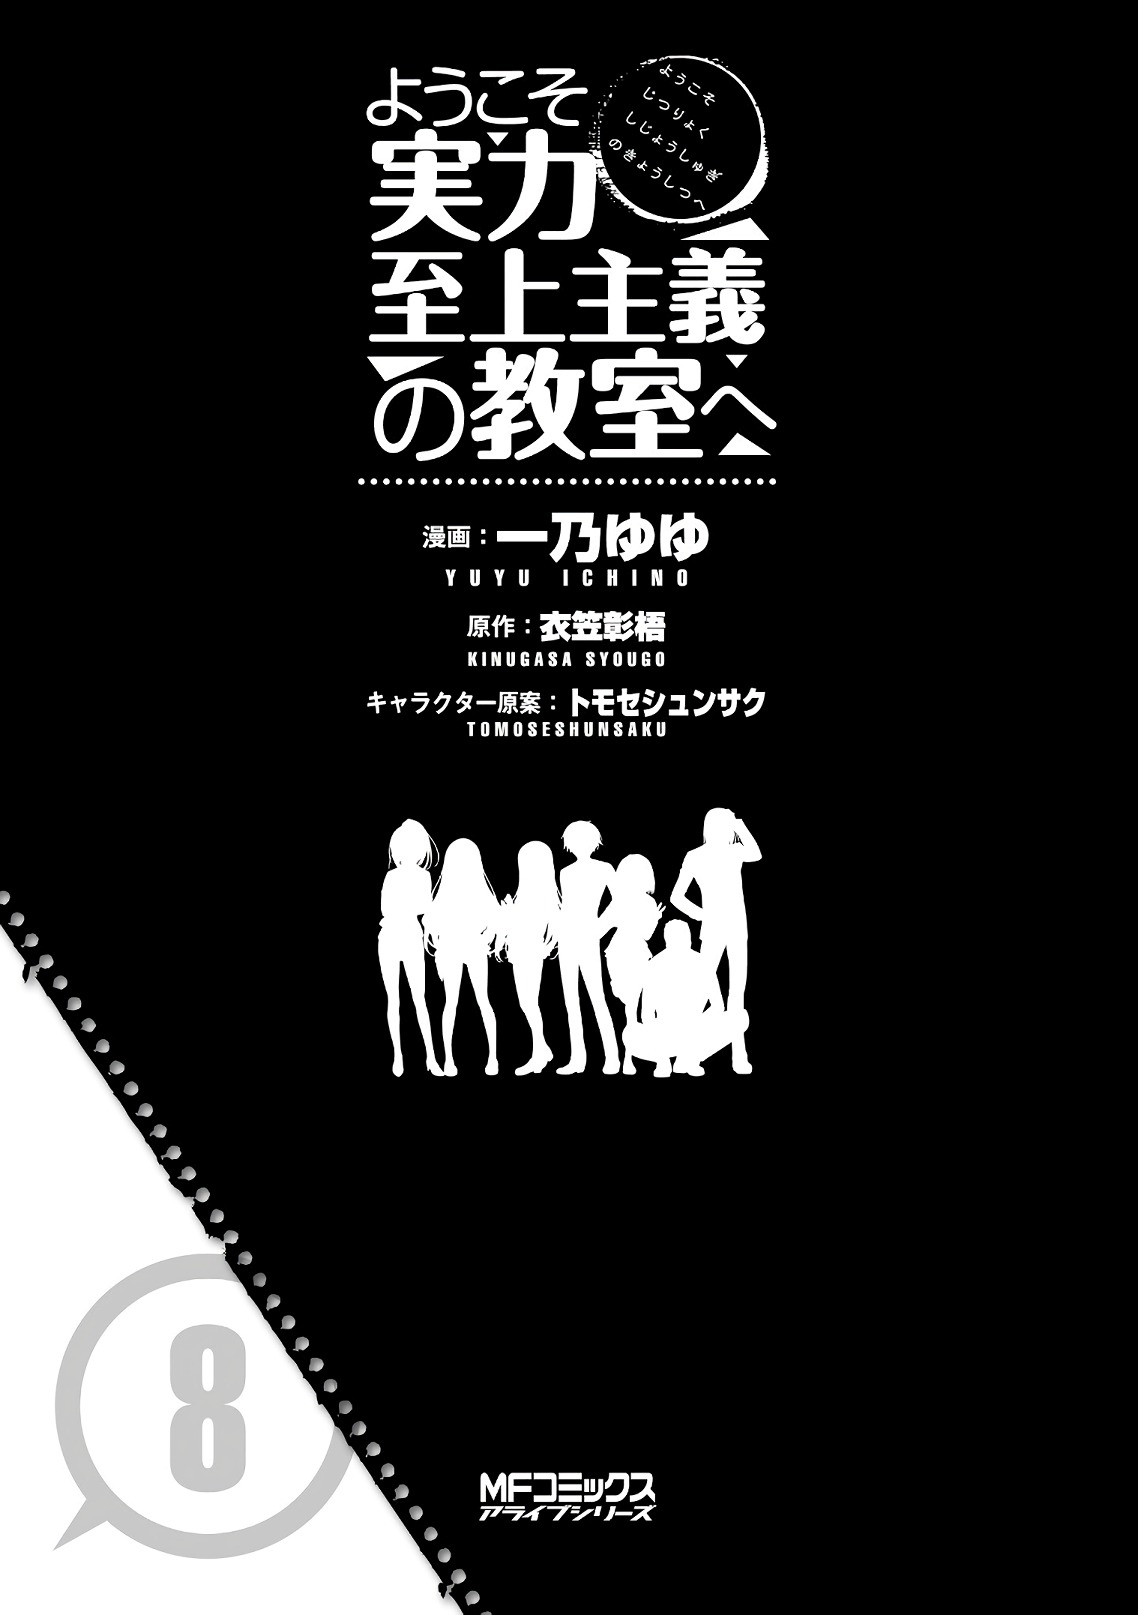 Youkoso Jitsuryoku Shijou Shugi no Kyoushitsu e Vol. 8 Ch. 33 Room 33